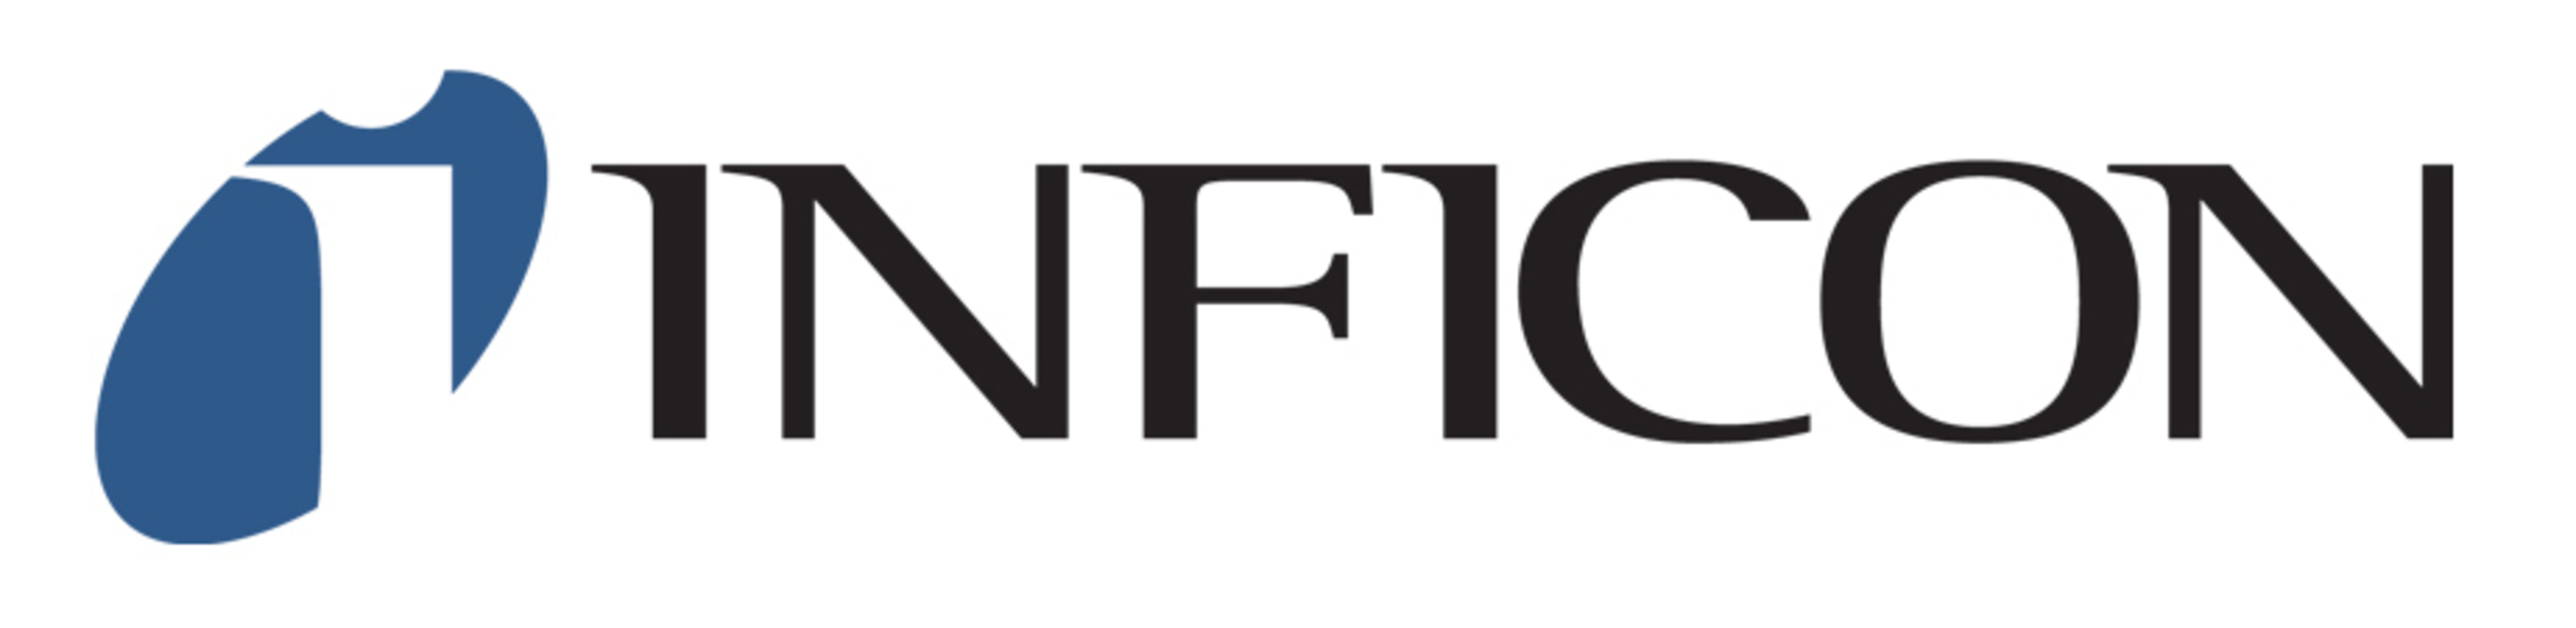 INFICON logo (PRNewsFoto/INFICON )